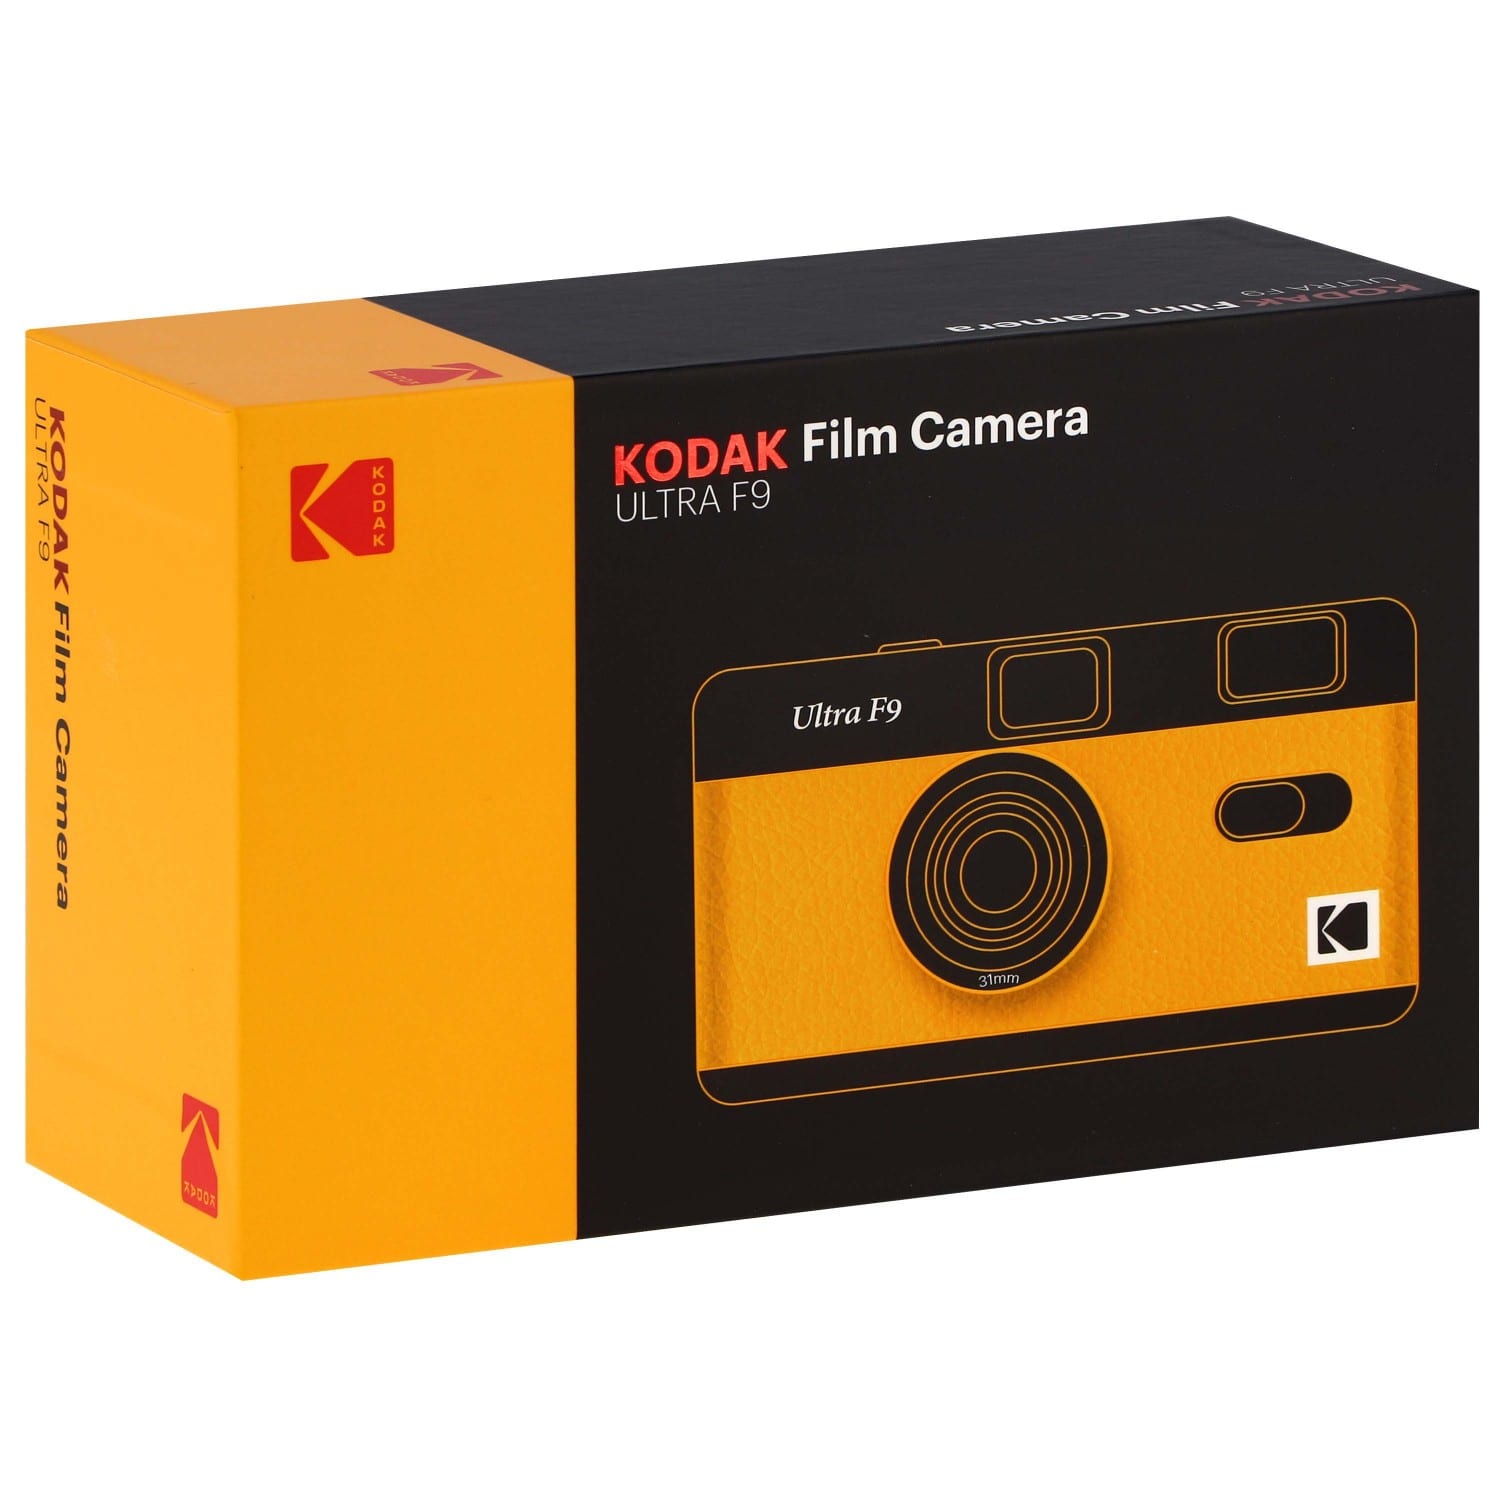 Kit Appareils Photo argentique réutilisable Kodak M38 - H35 - F9